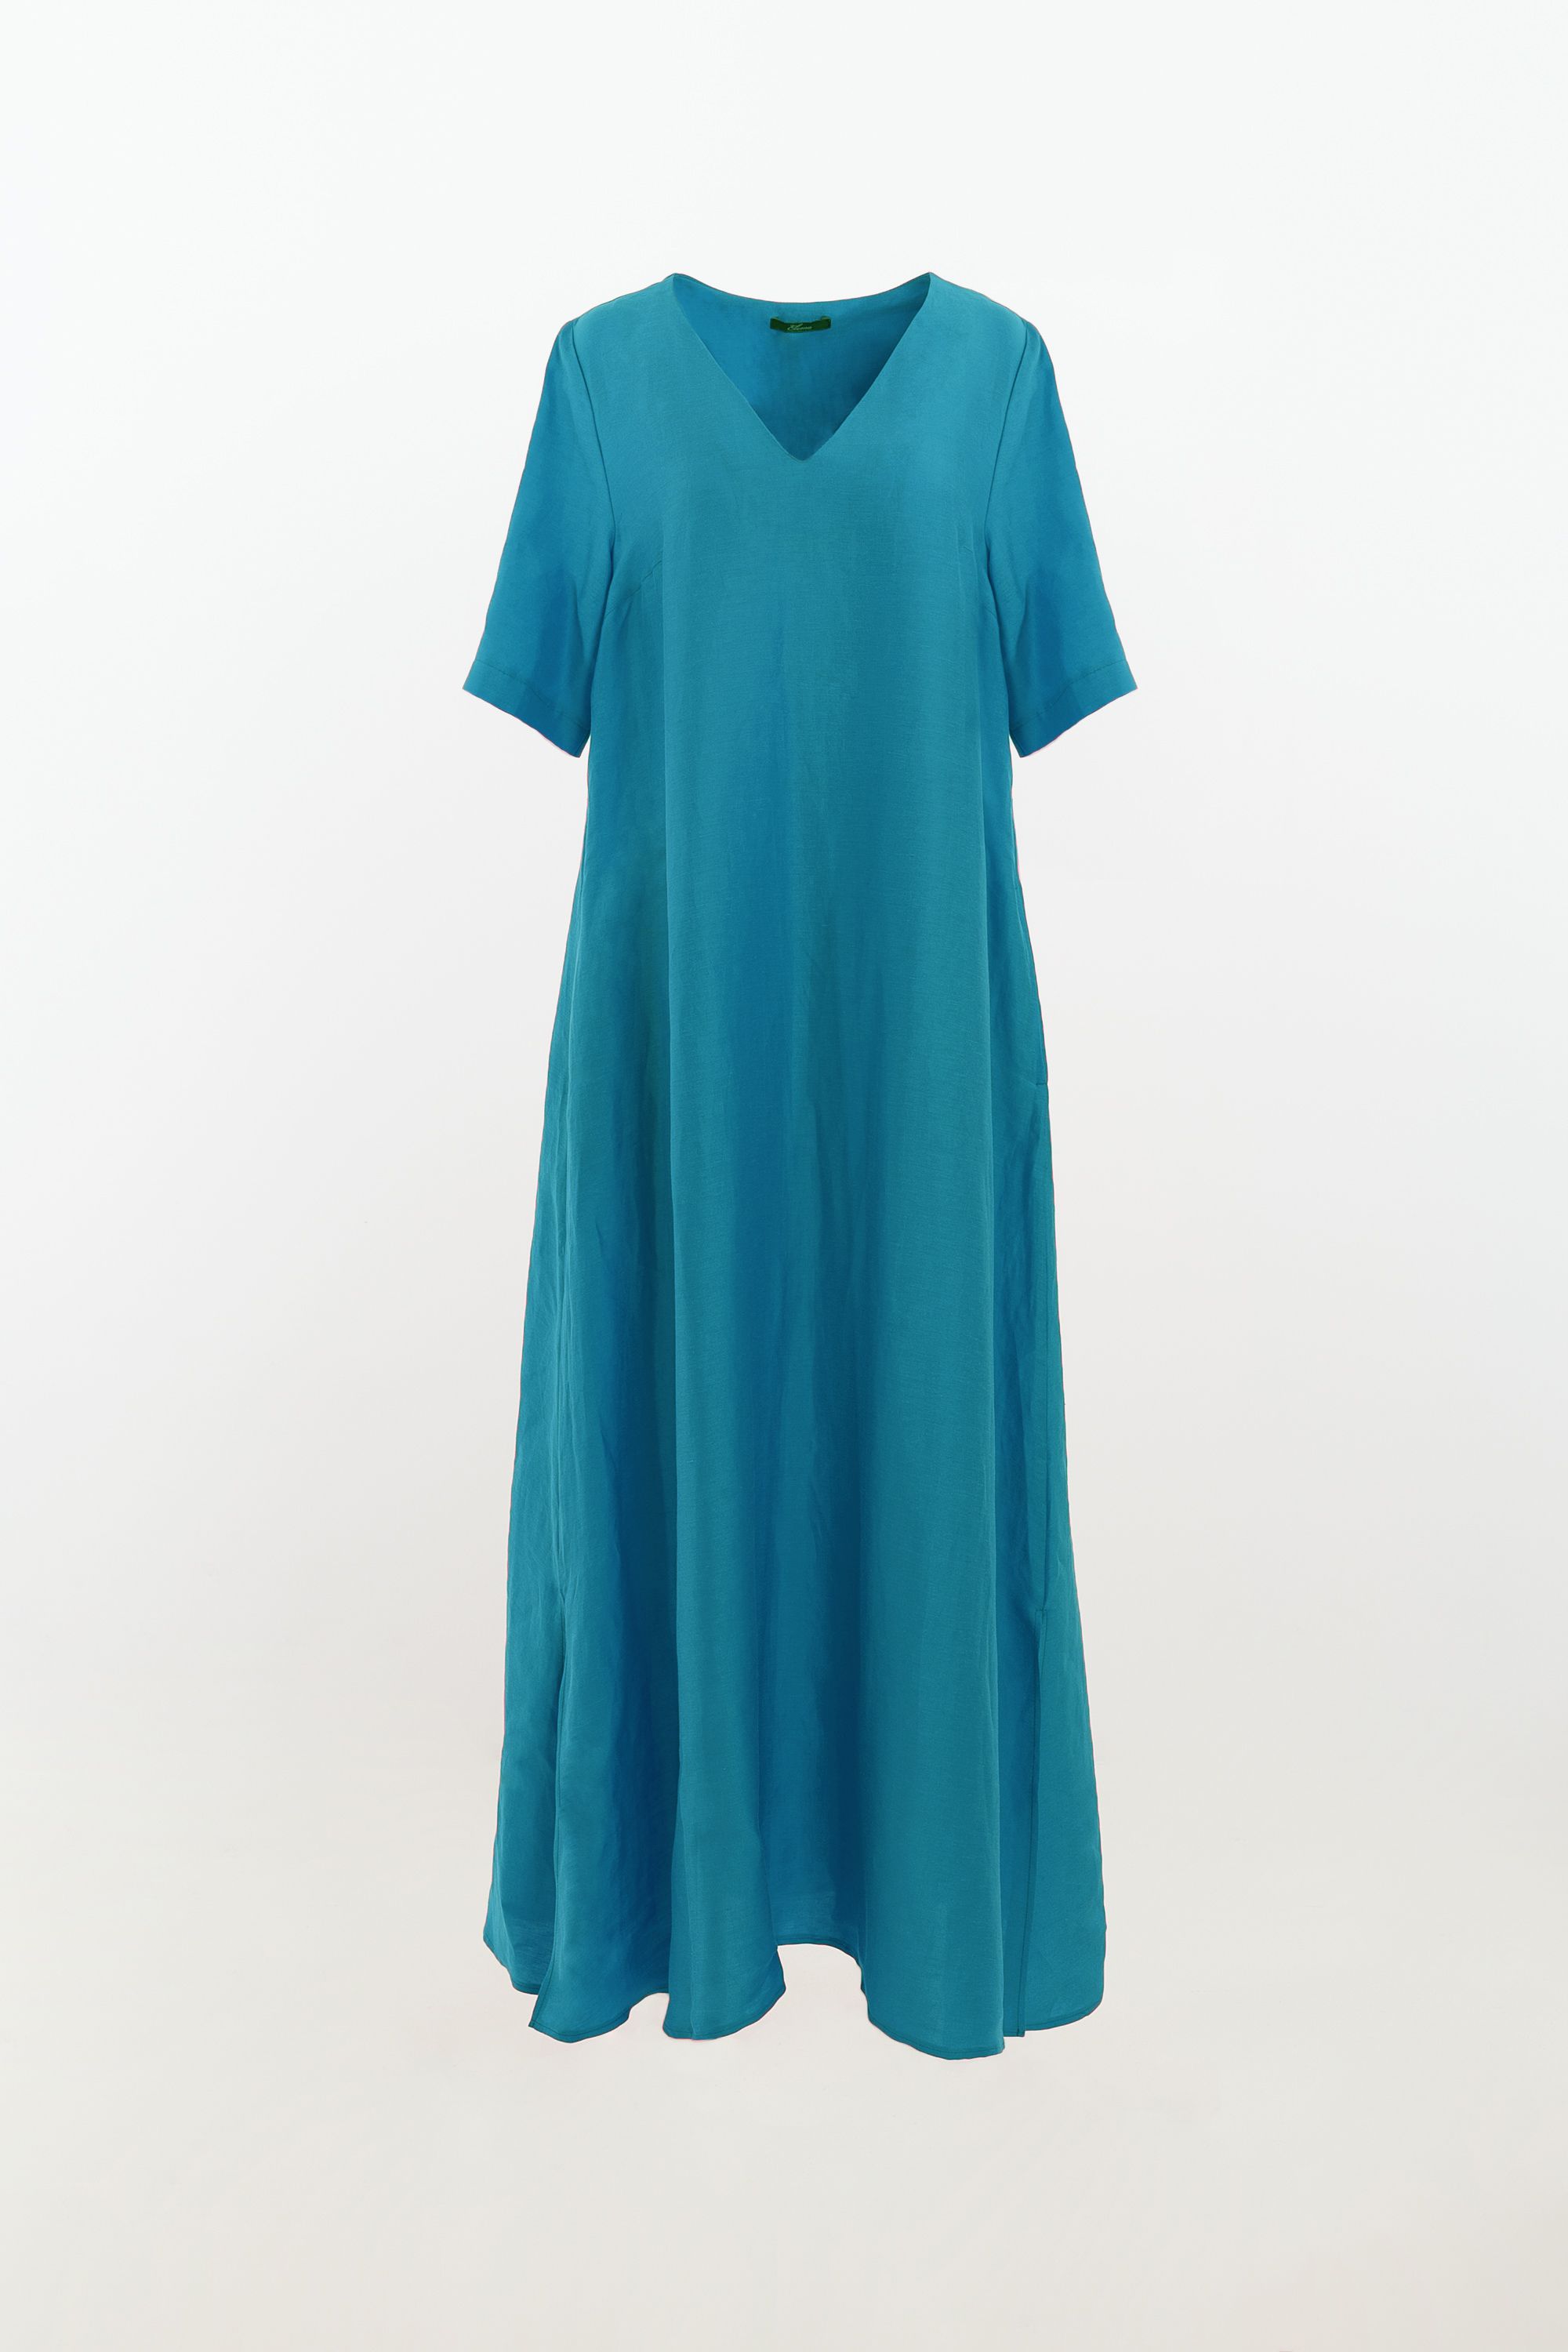 Платье женское 5К-11943-1. Фото 1.